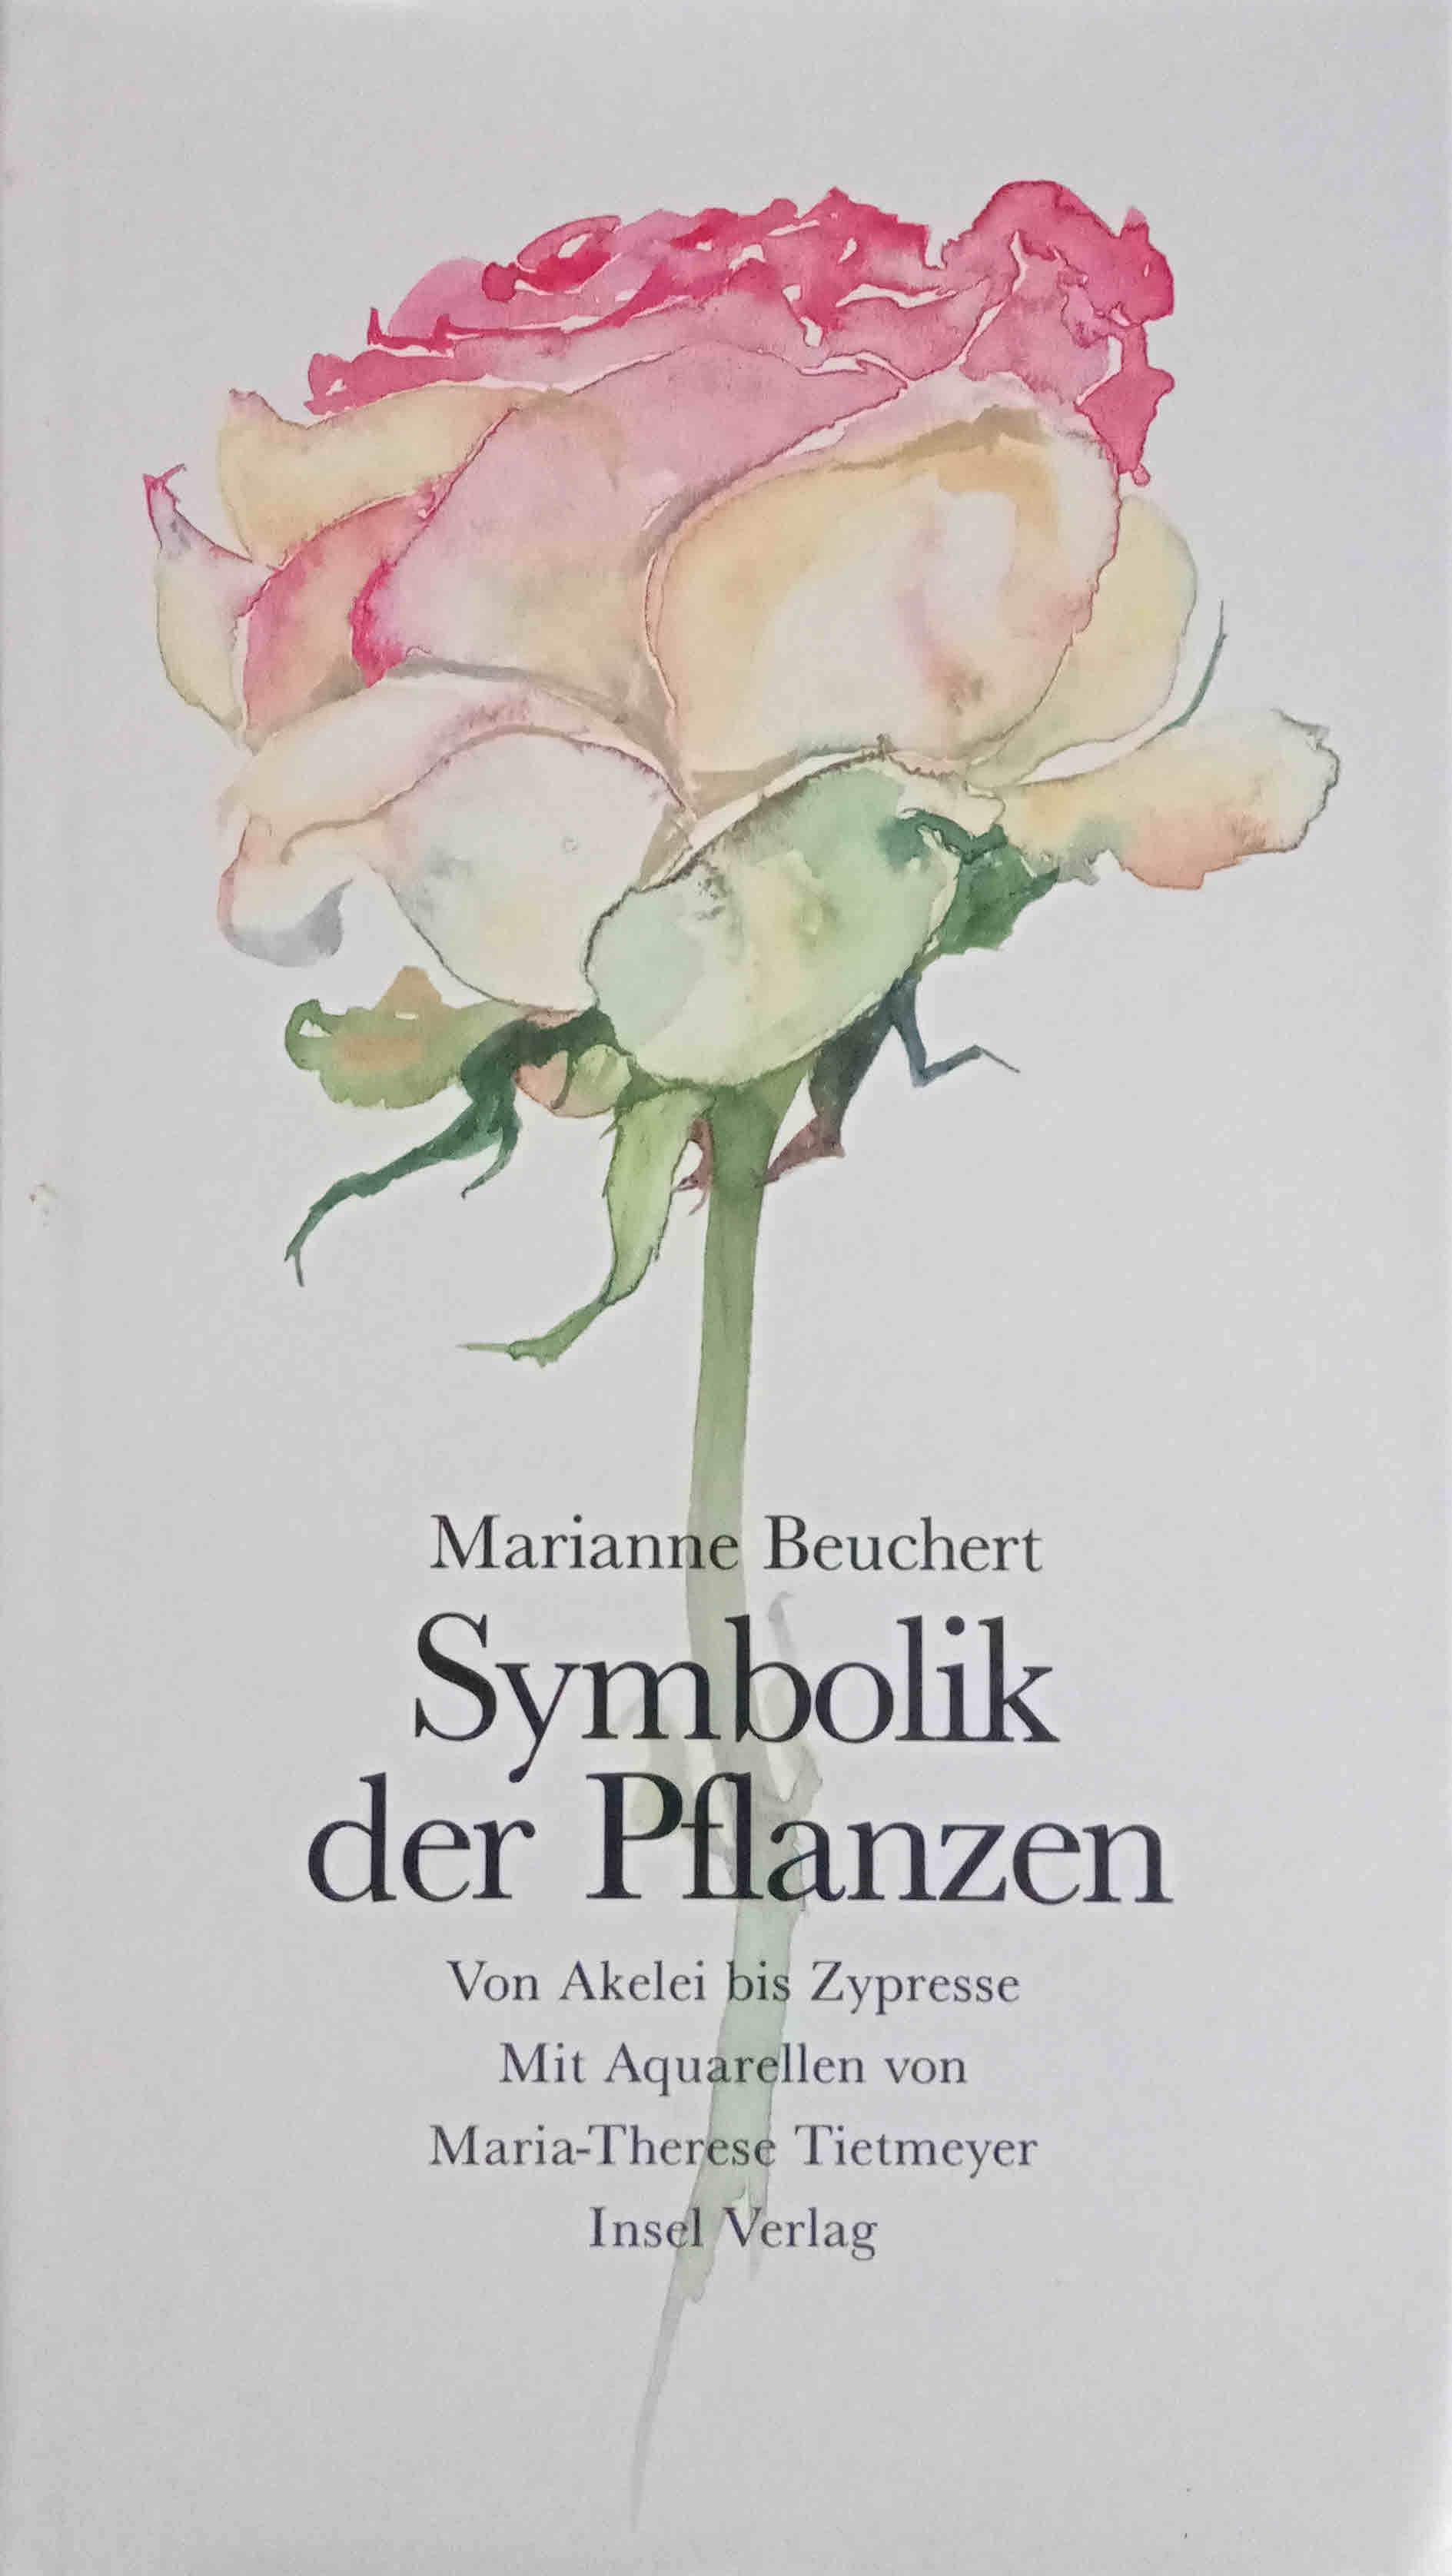 Symbolik der Pflanzen : von Akelei bis Zypresse. Mit 101 Aquarellen von Maria-Therese Tietmeyer - Beuchert, Marianne